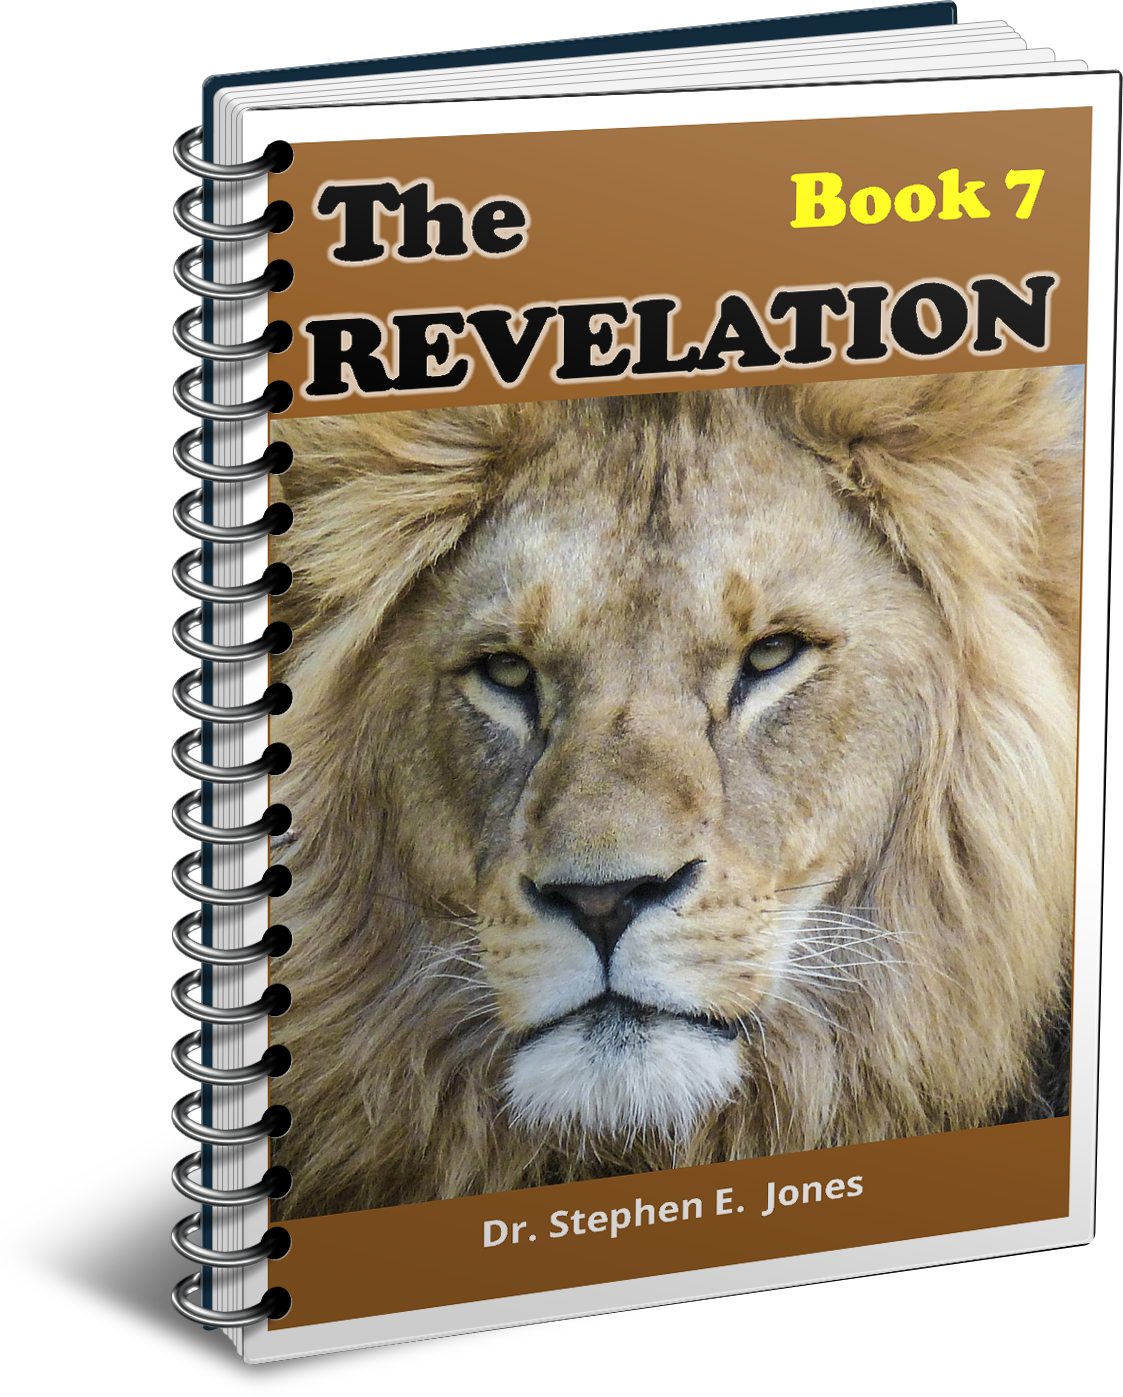 Revelation-Book-7-Spiral.png